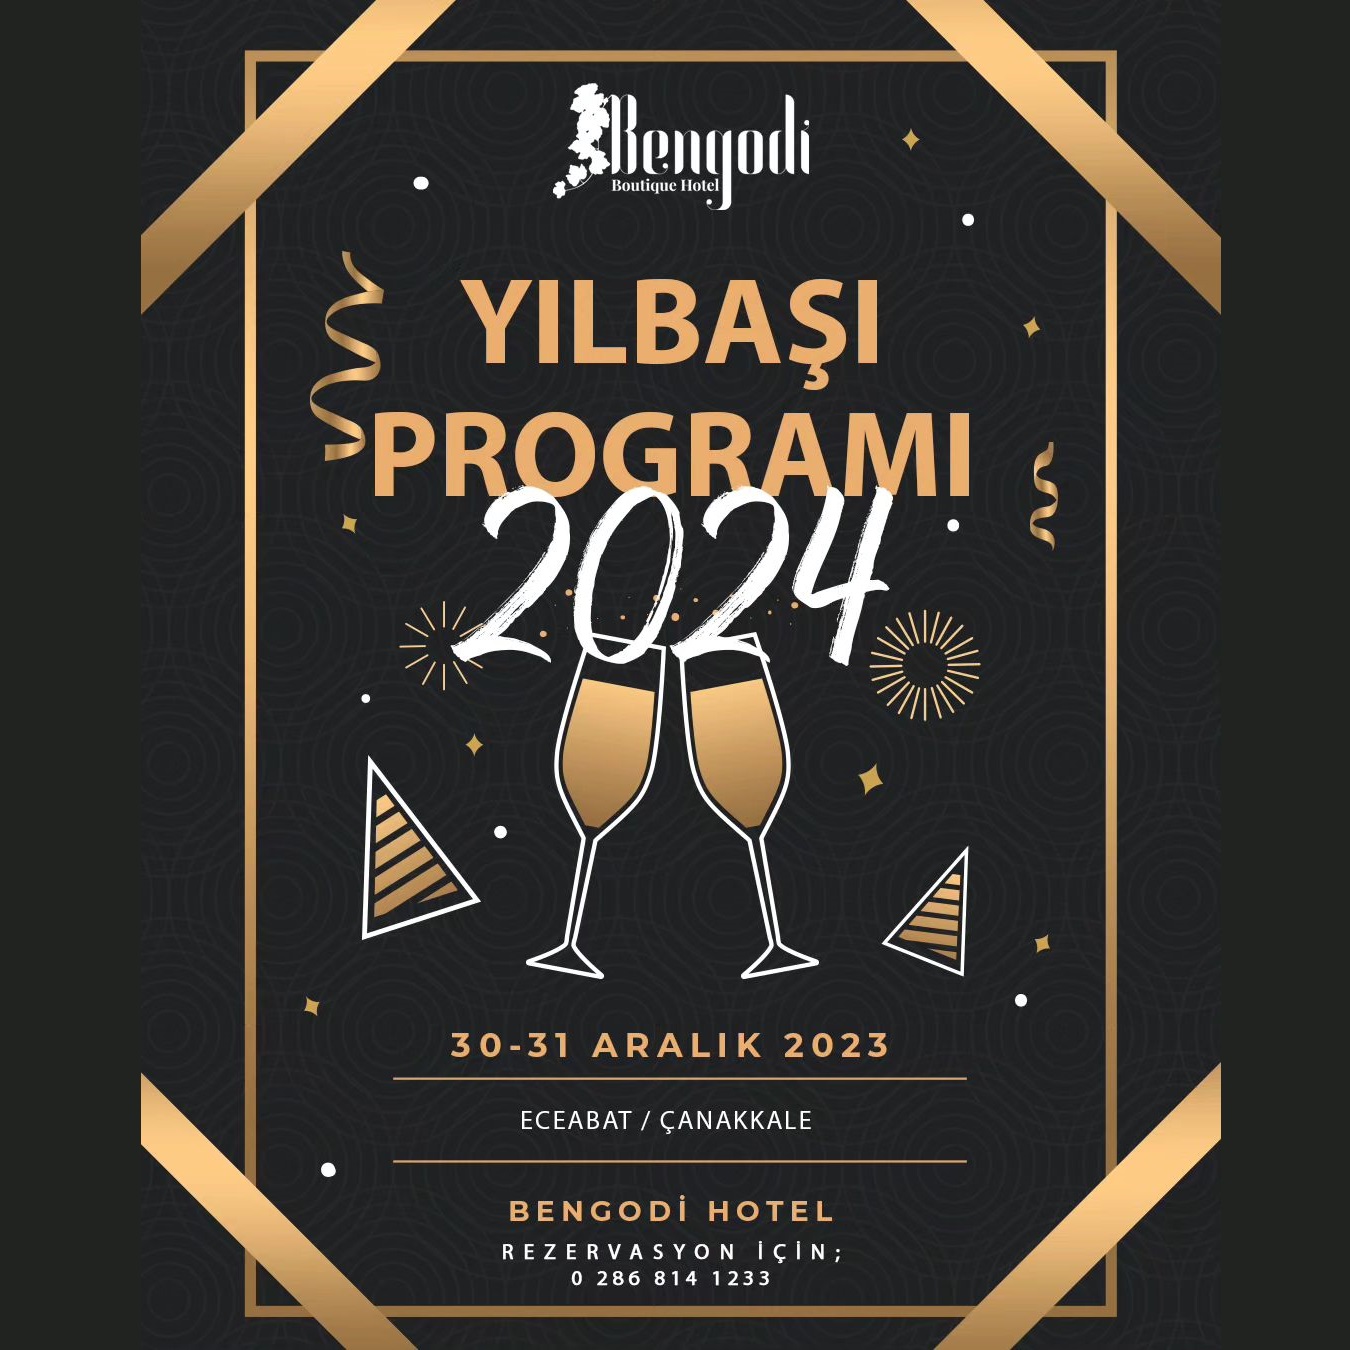 Bengodi Boutique Hotel Çanakkale Yılbaşı Programı 2024